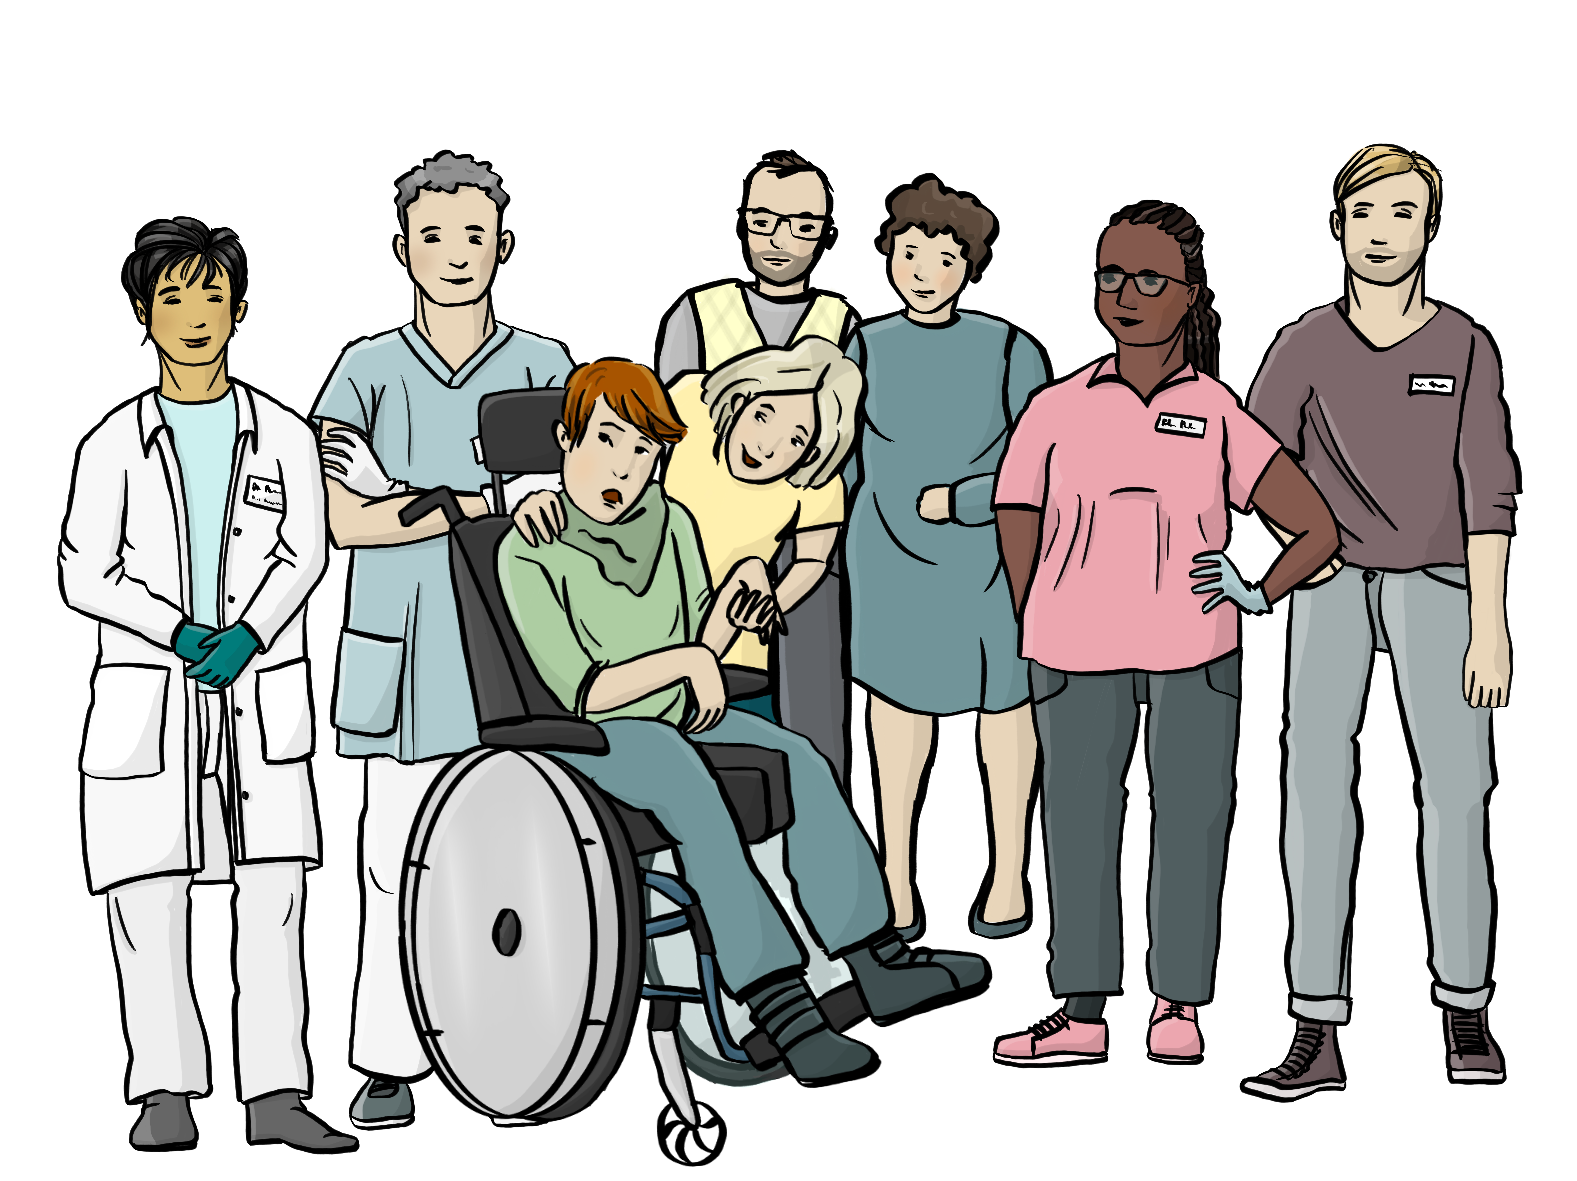 Eine Ärztin, ein Krankenpfleger, eine Arzthelferin und ein junger Mann und ein älteres Paar stehen um eine Person im Rollstuhl herum. Eine Frau in Alltagskleidung beugt sich zu der Person hinunter.